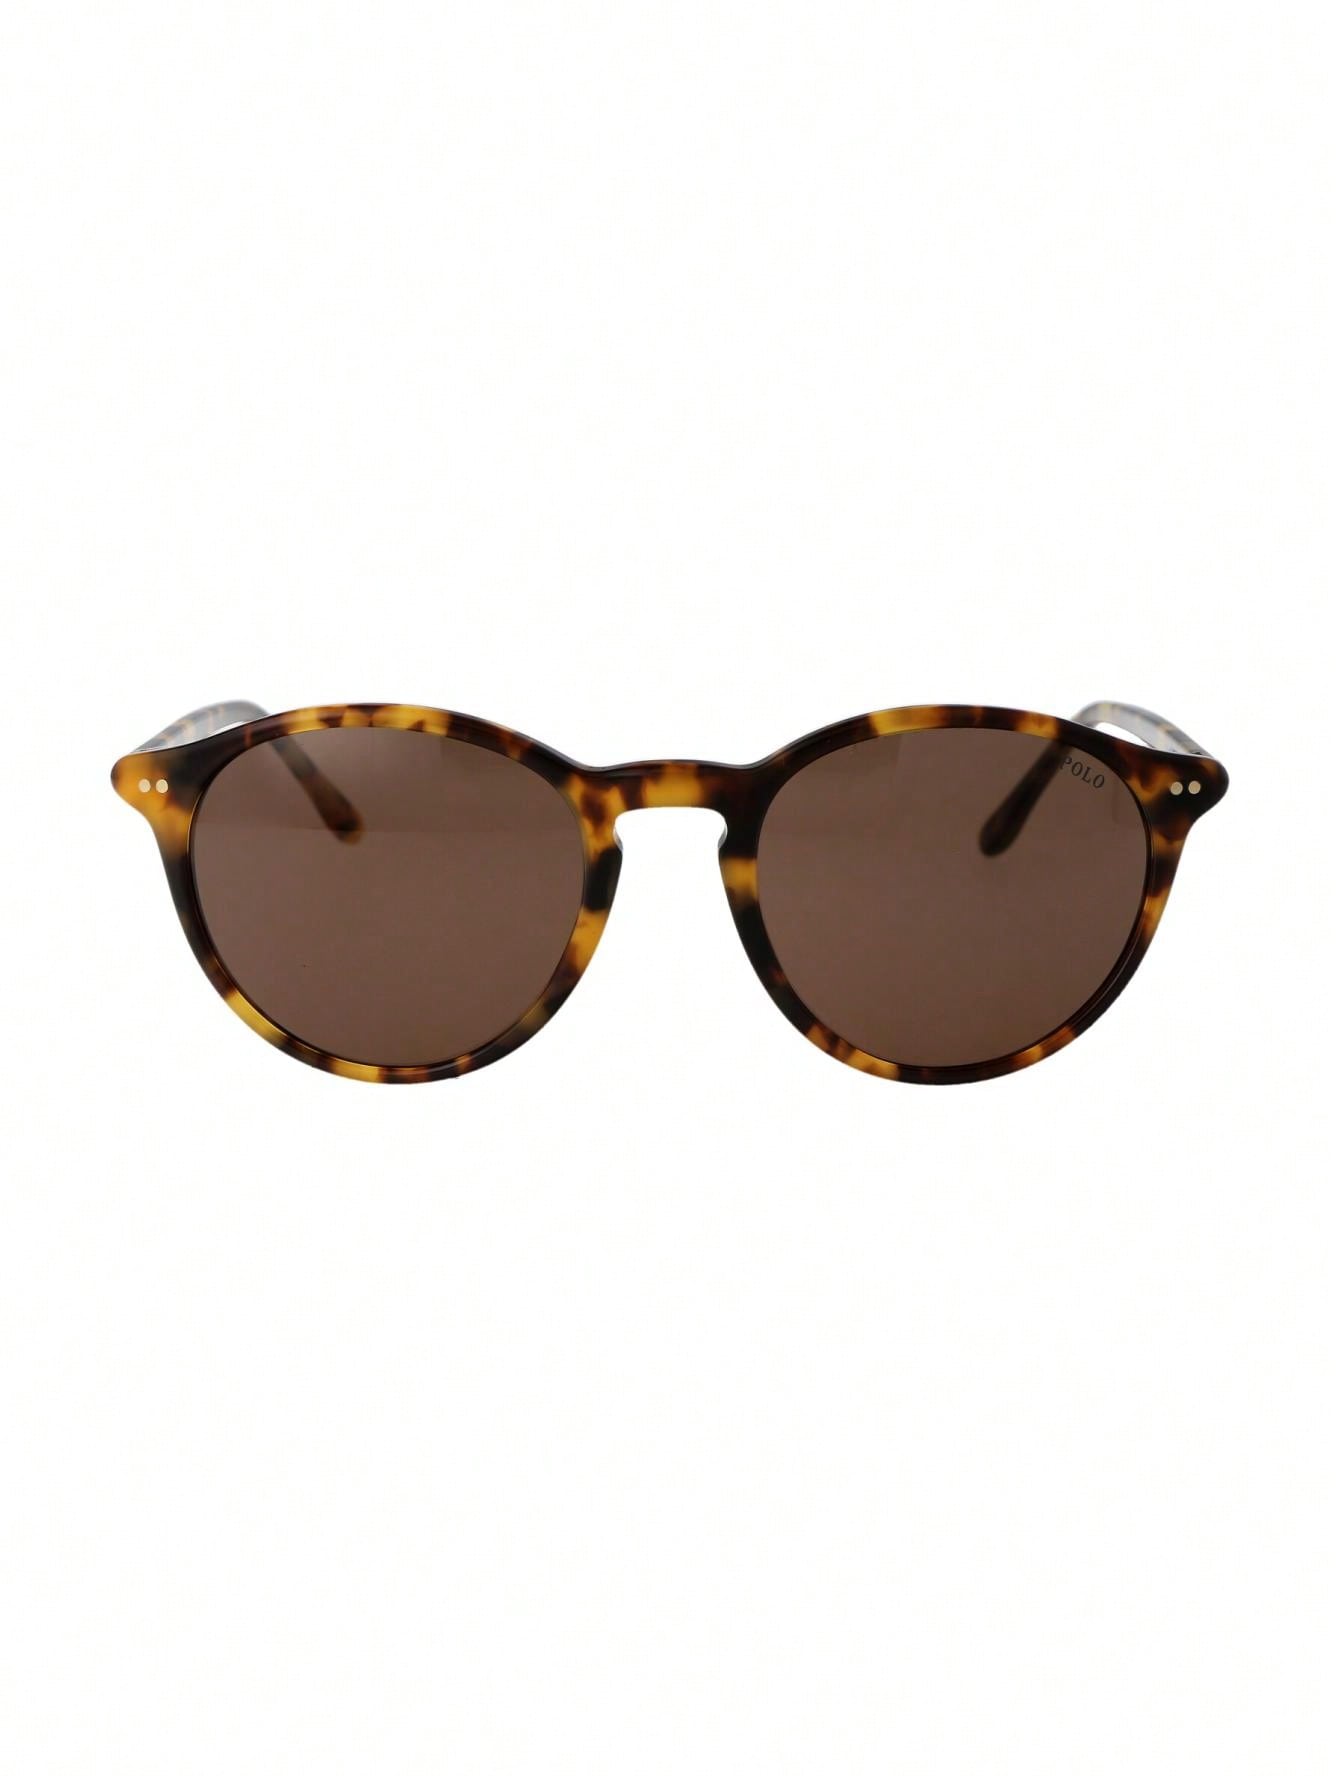 Мужские солнцезащитные очки Polo Ralph Lauren DECOR 0PH4193535273, многоцветный